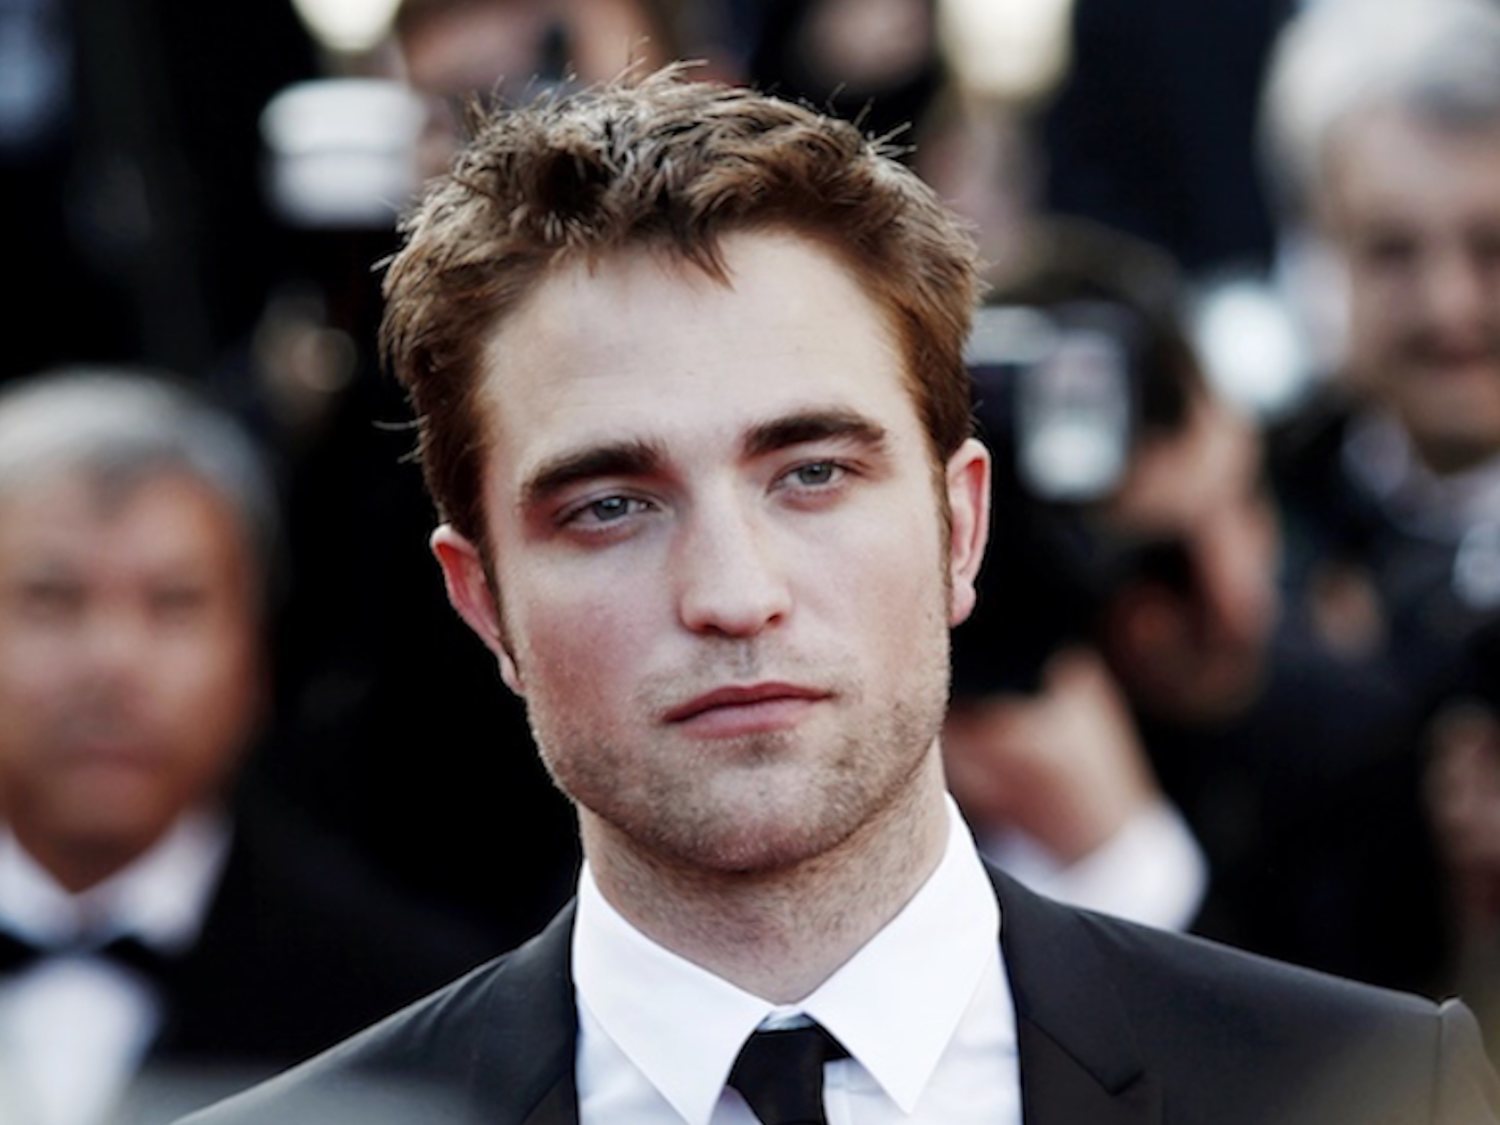 Robert Pattinson es el hombre más guapo del mundo, según un estudio científico